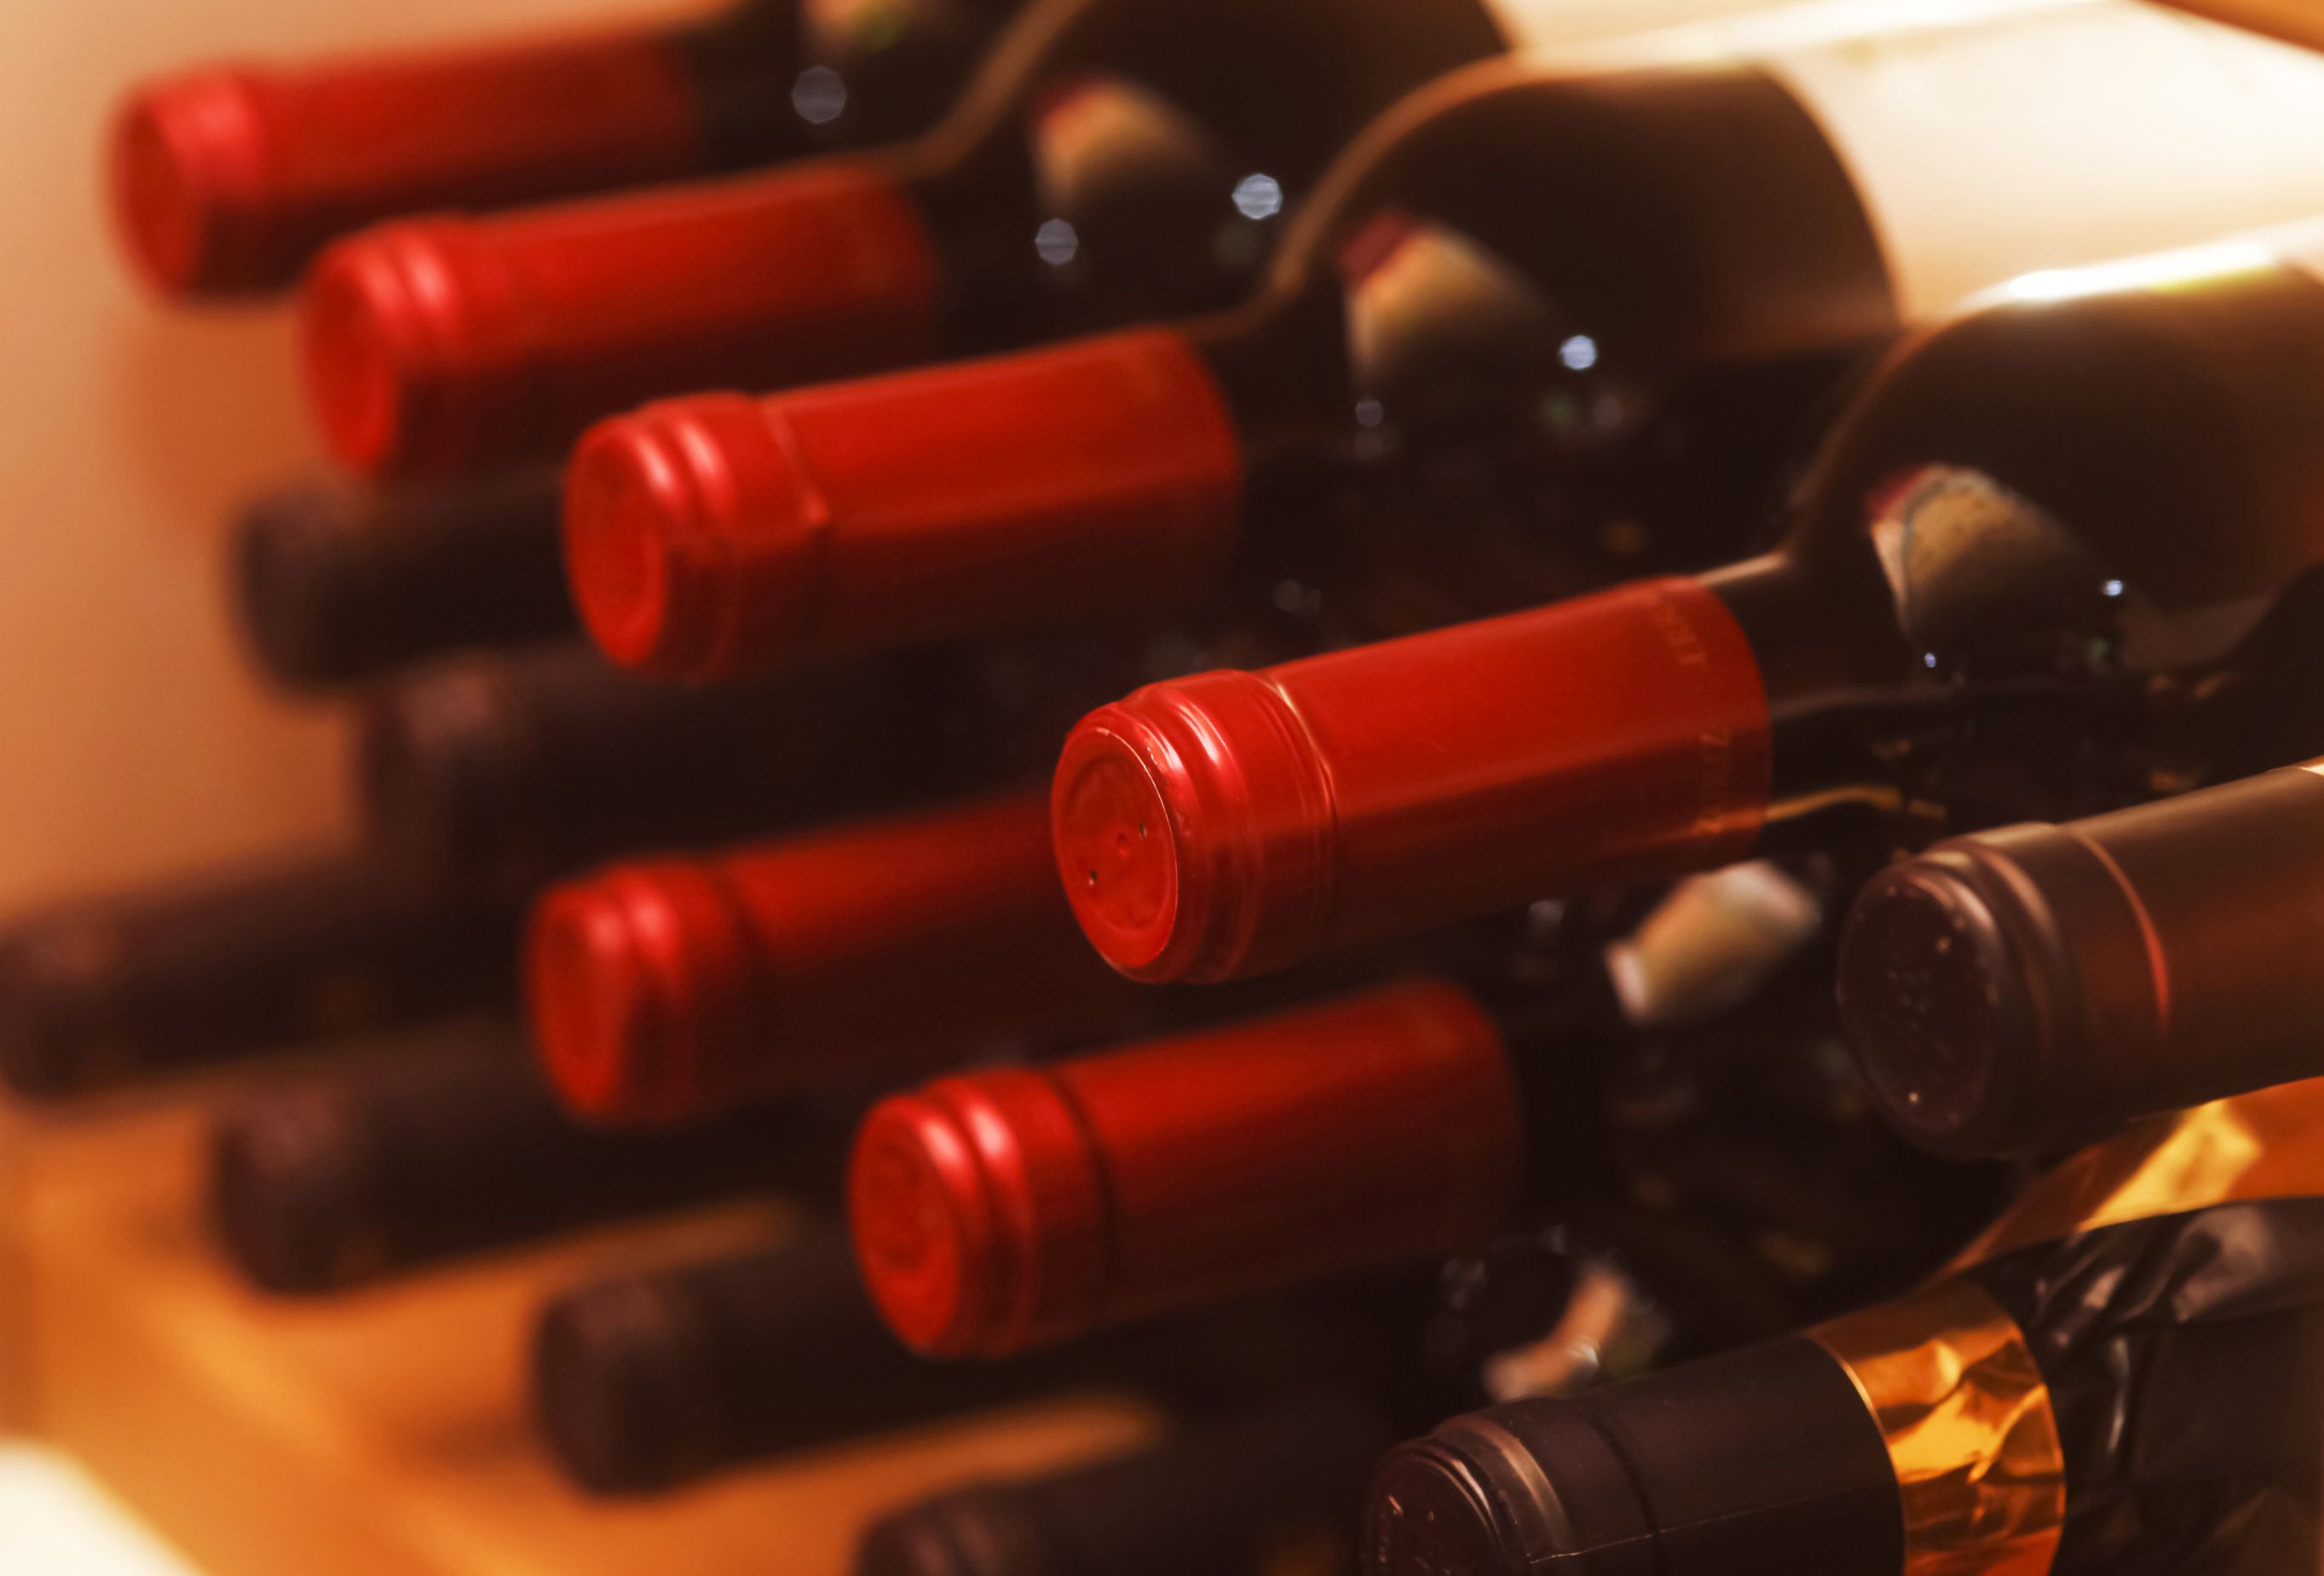 Il tappo a vite è meglio per una bottiglia di vino? — WineCouture